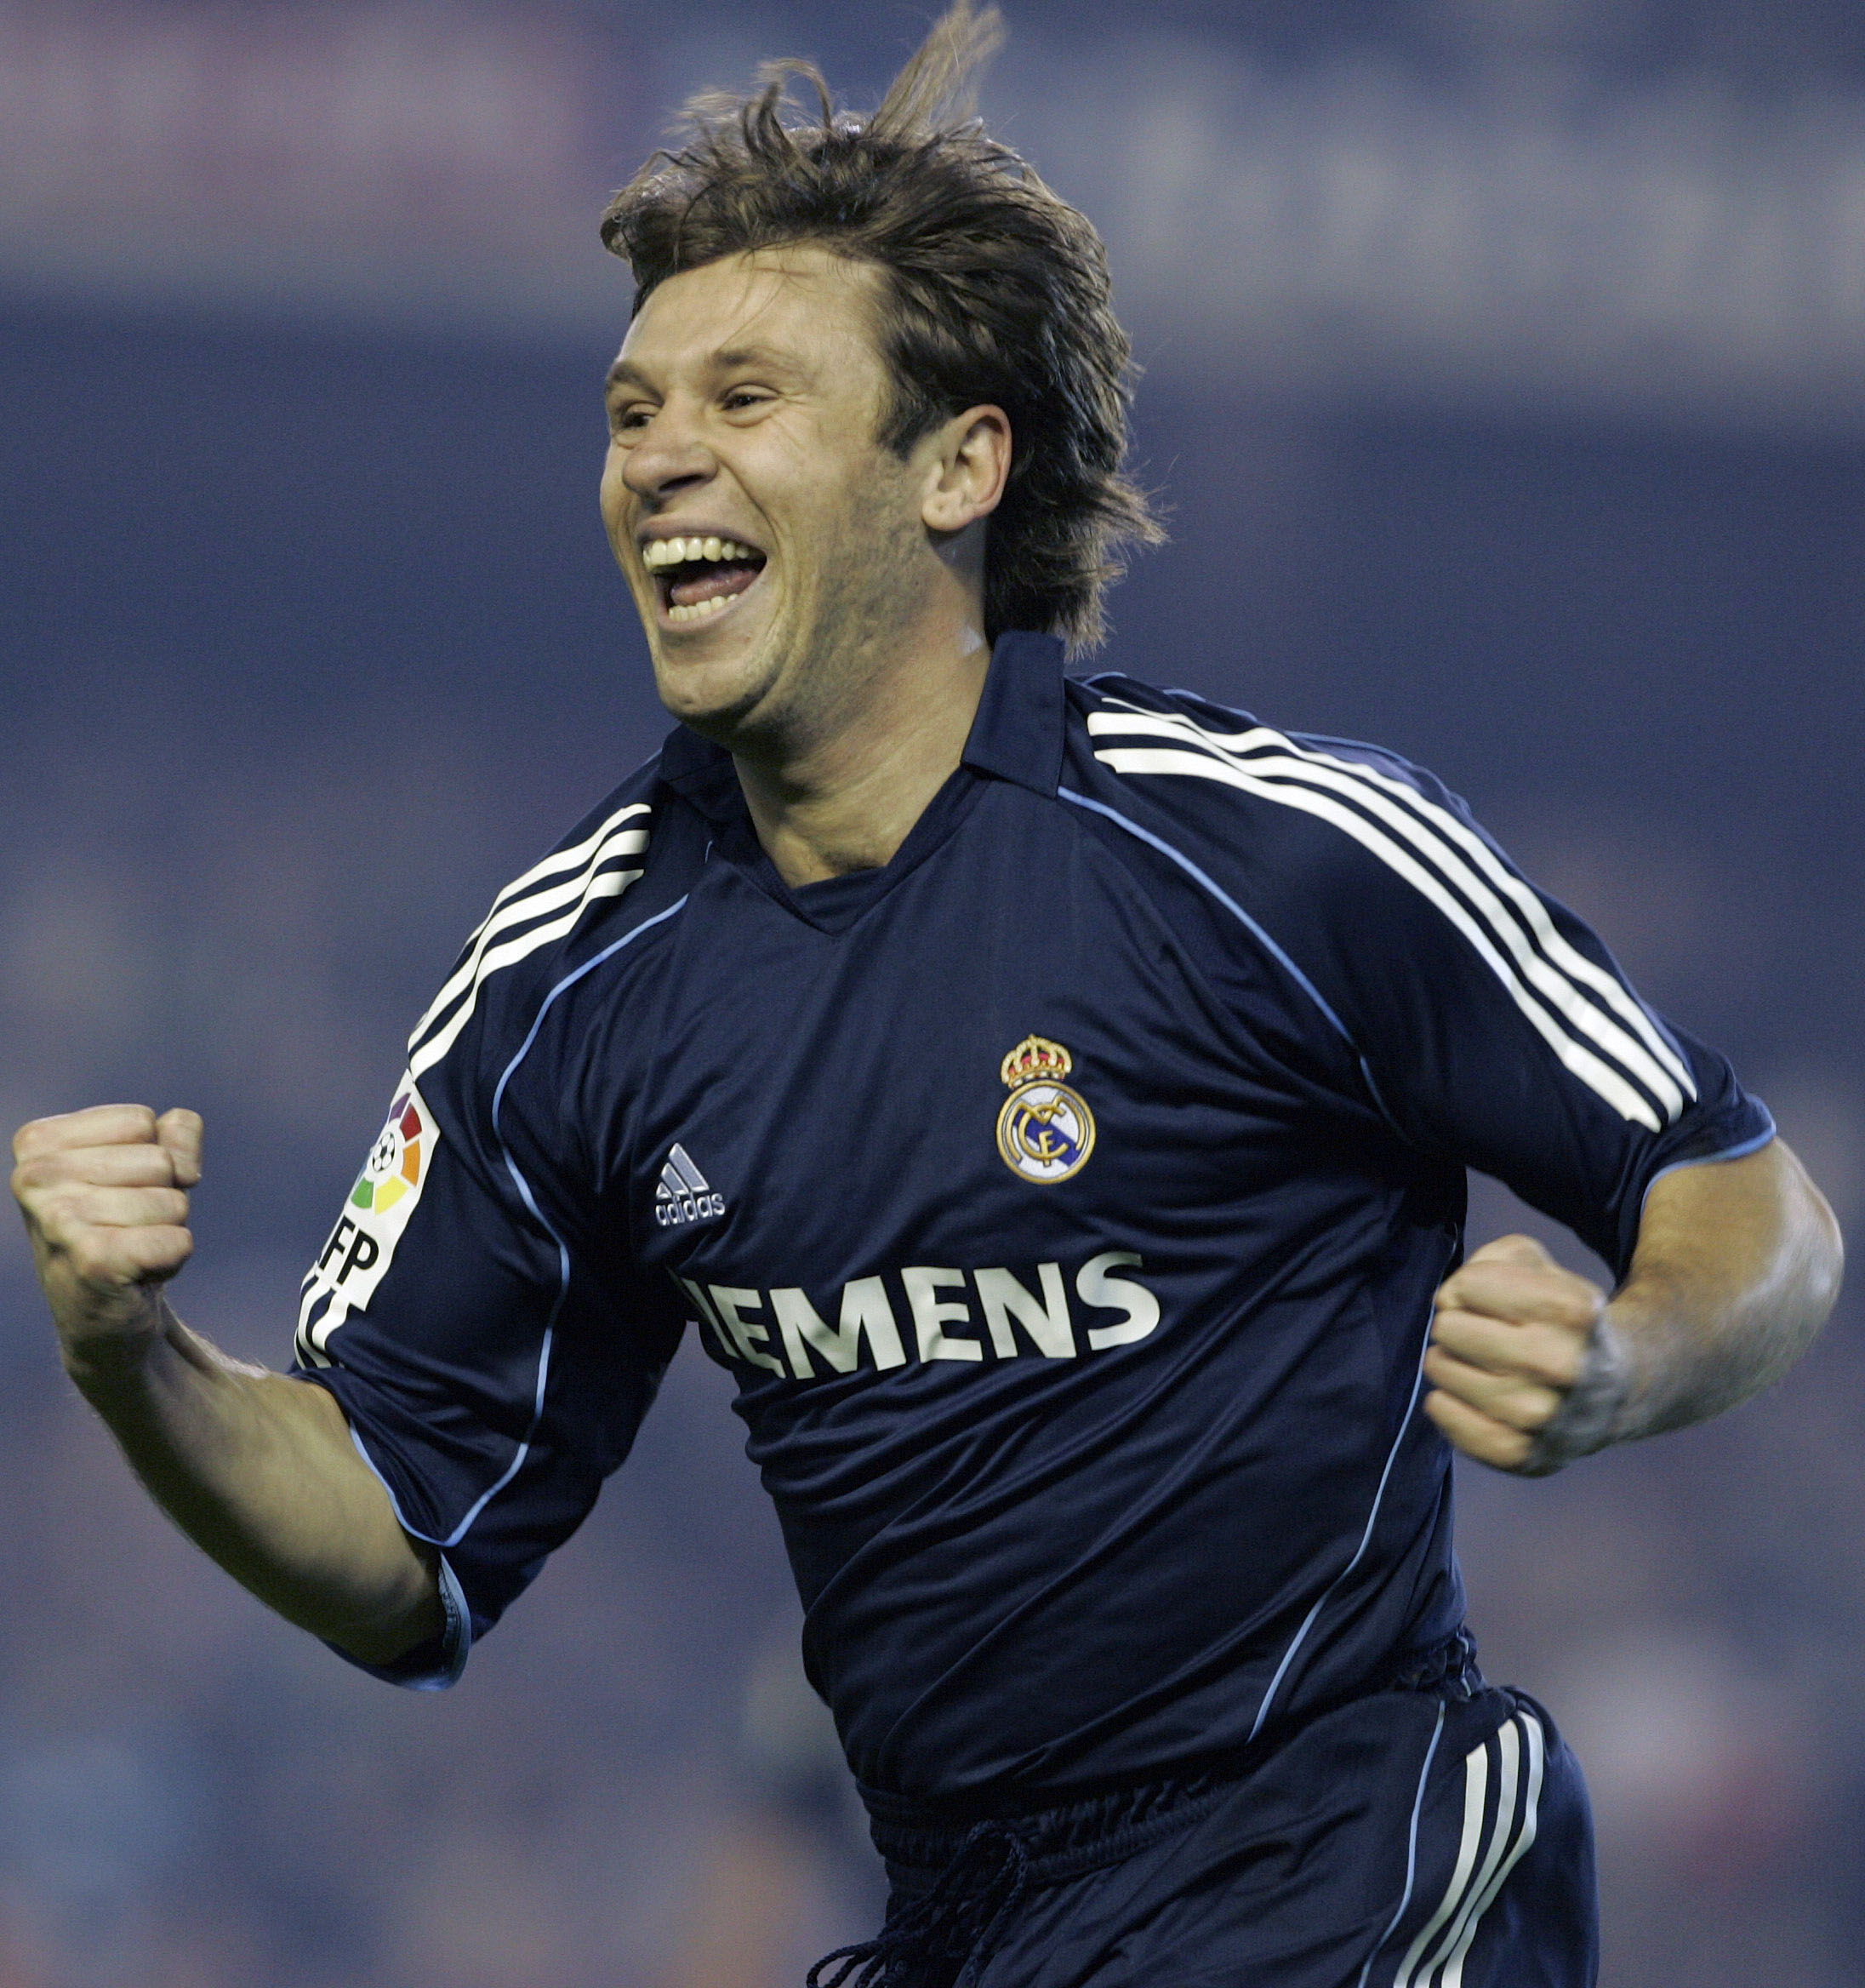 2006 värvades han till Real Madrid. Men Cassano lyckades aldrig ta en startplats och var inblandad i i många skandaler utanför planen.